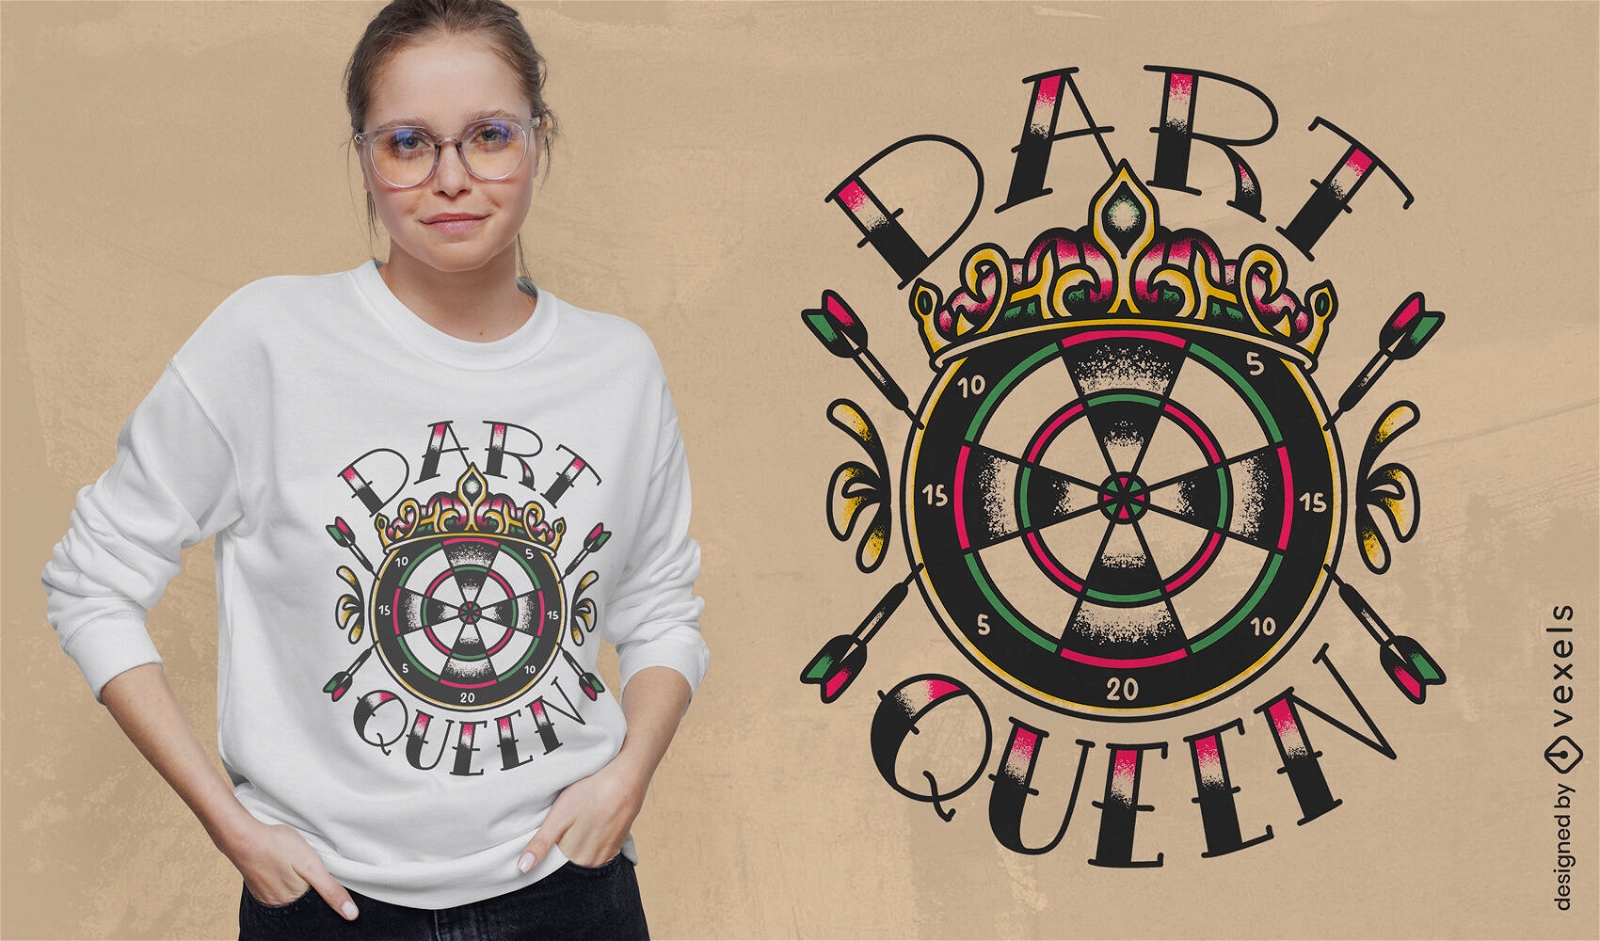 Dart queen quote t-shirt design